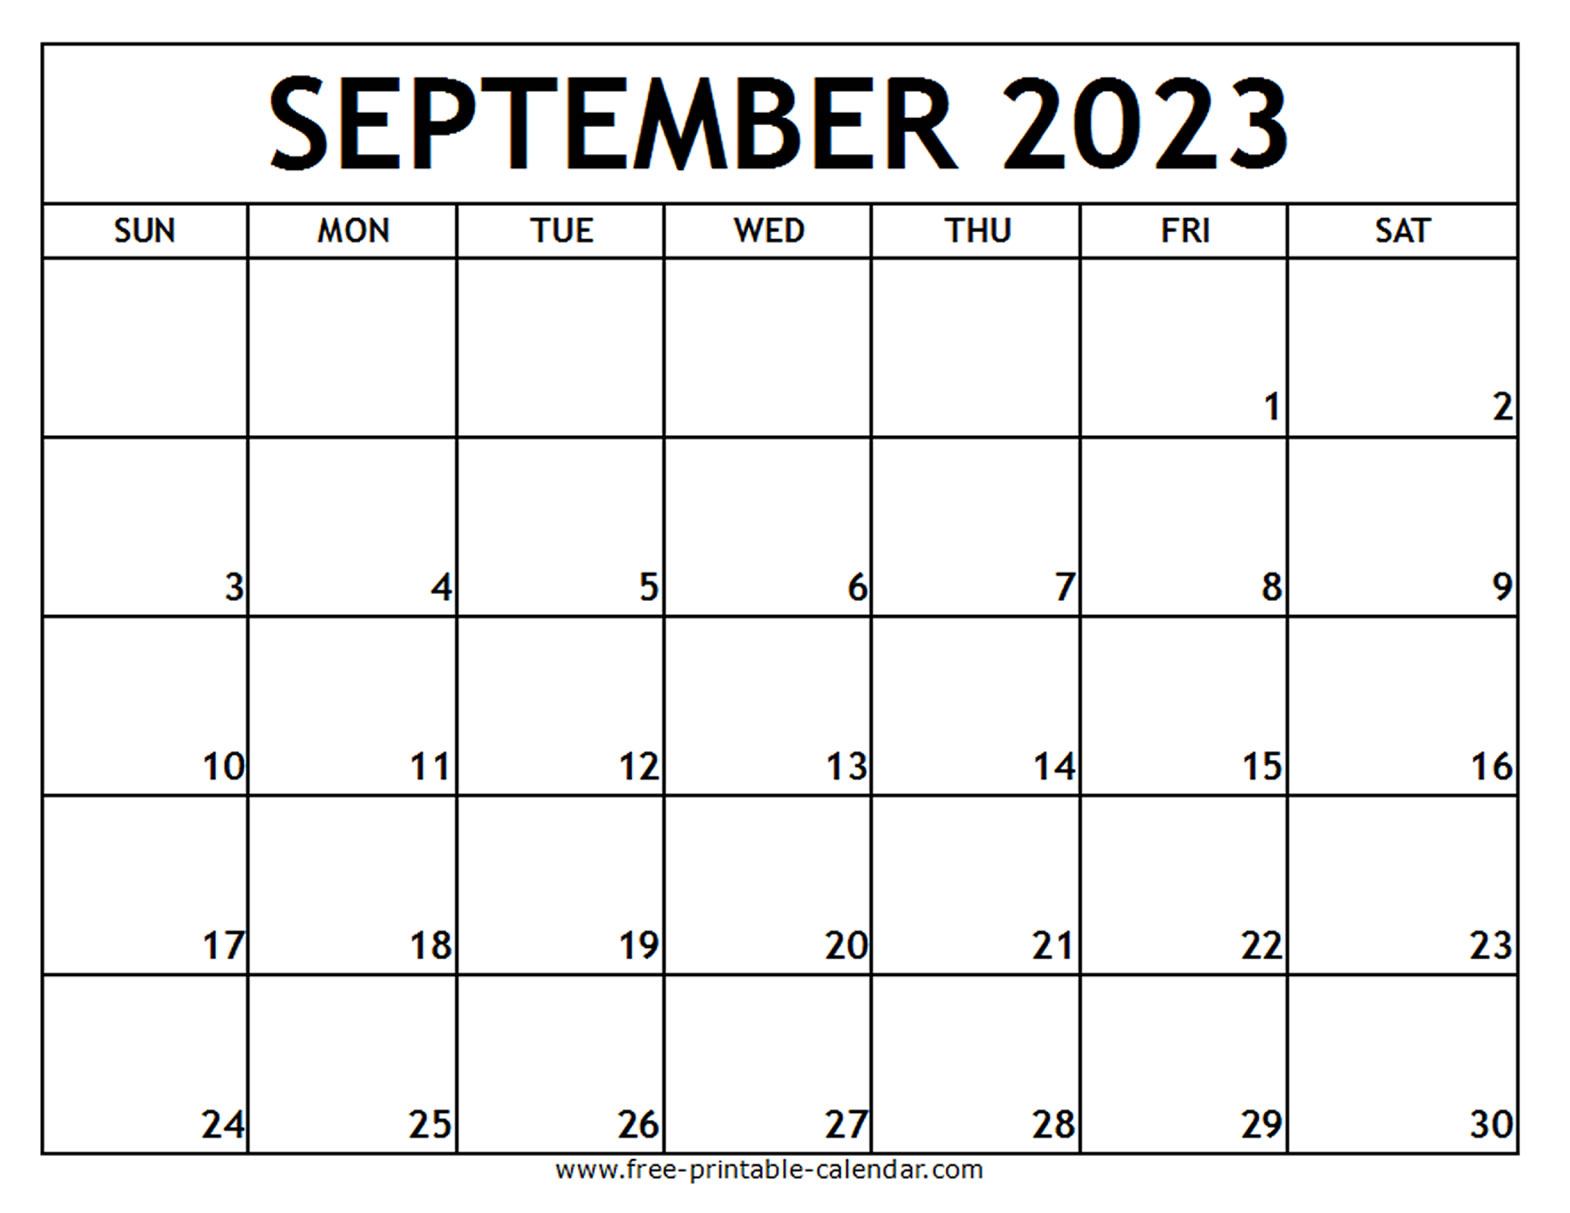 Blank September 2023 Calendar Get Calendar 2023 Update